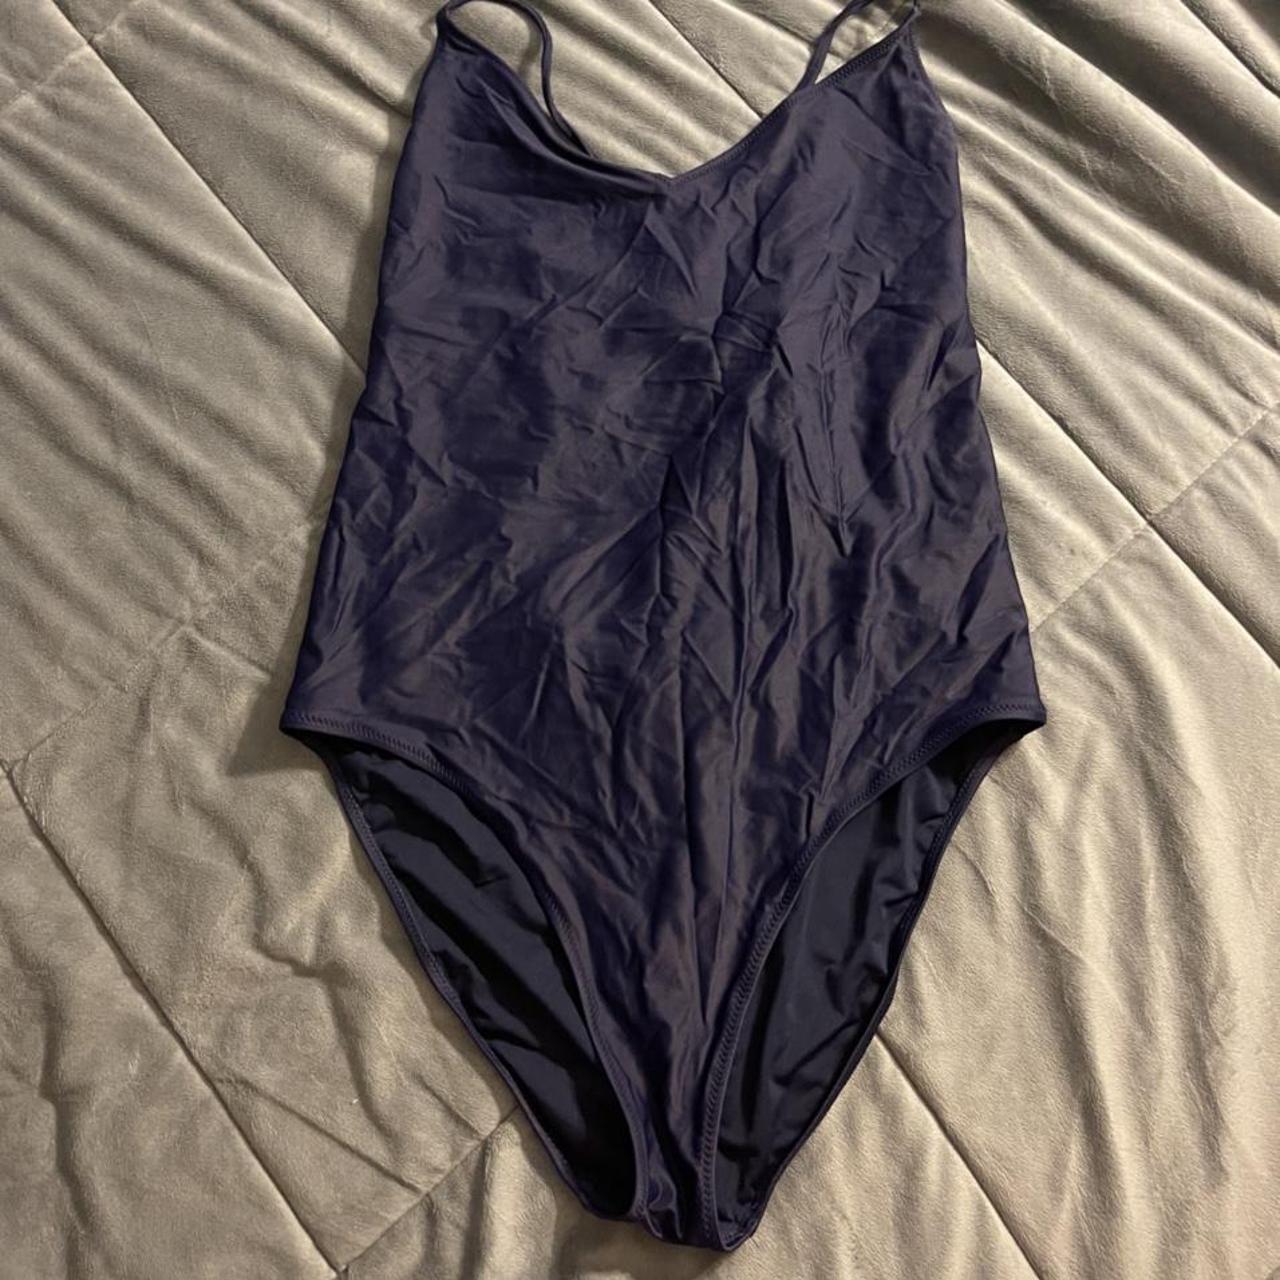 Lululemon Women's Navy Swimsuit-one-piece | Depop